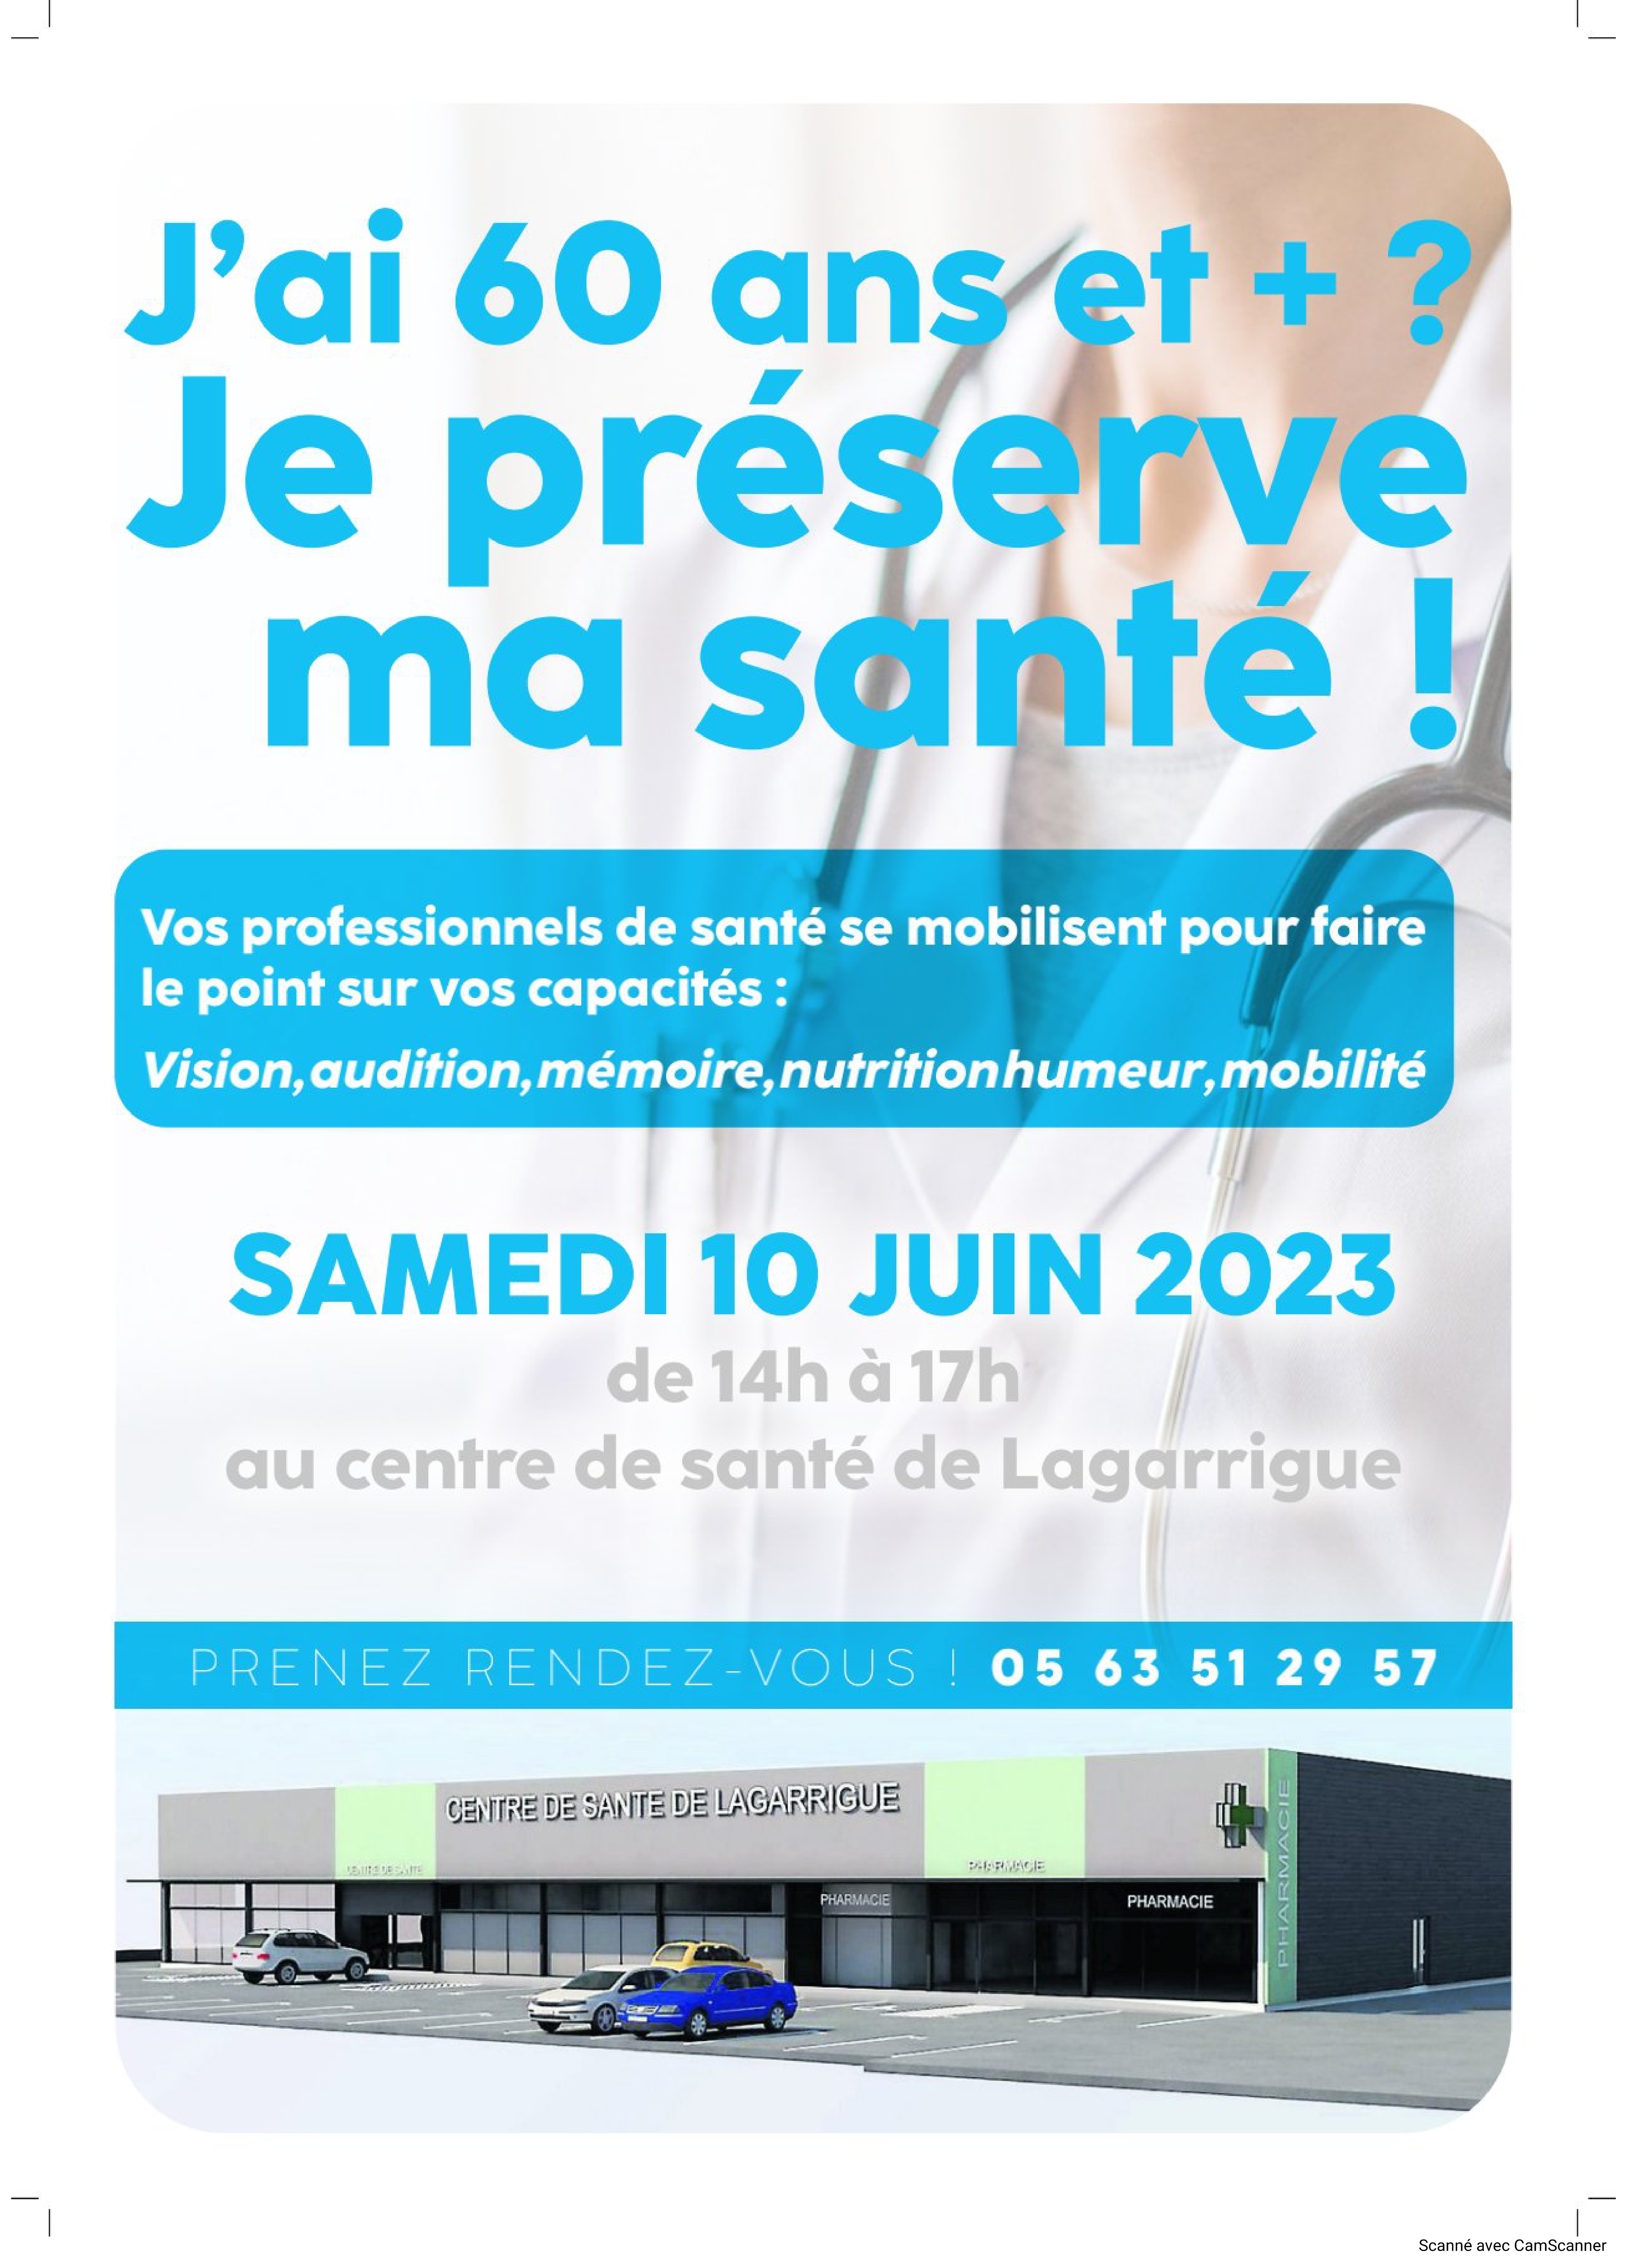 Centre de santé Lagarrigue